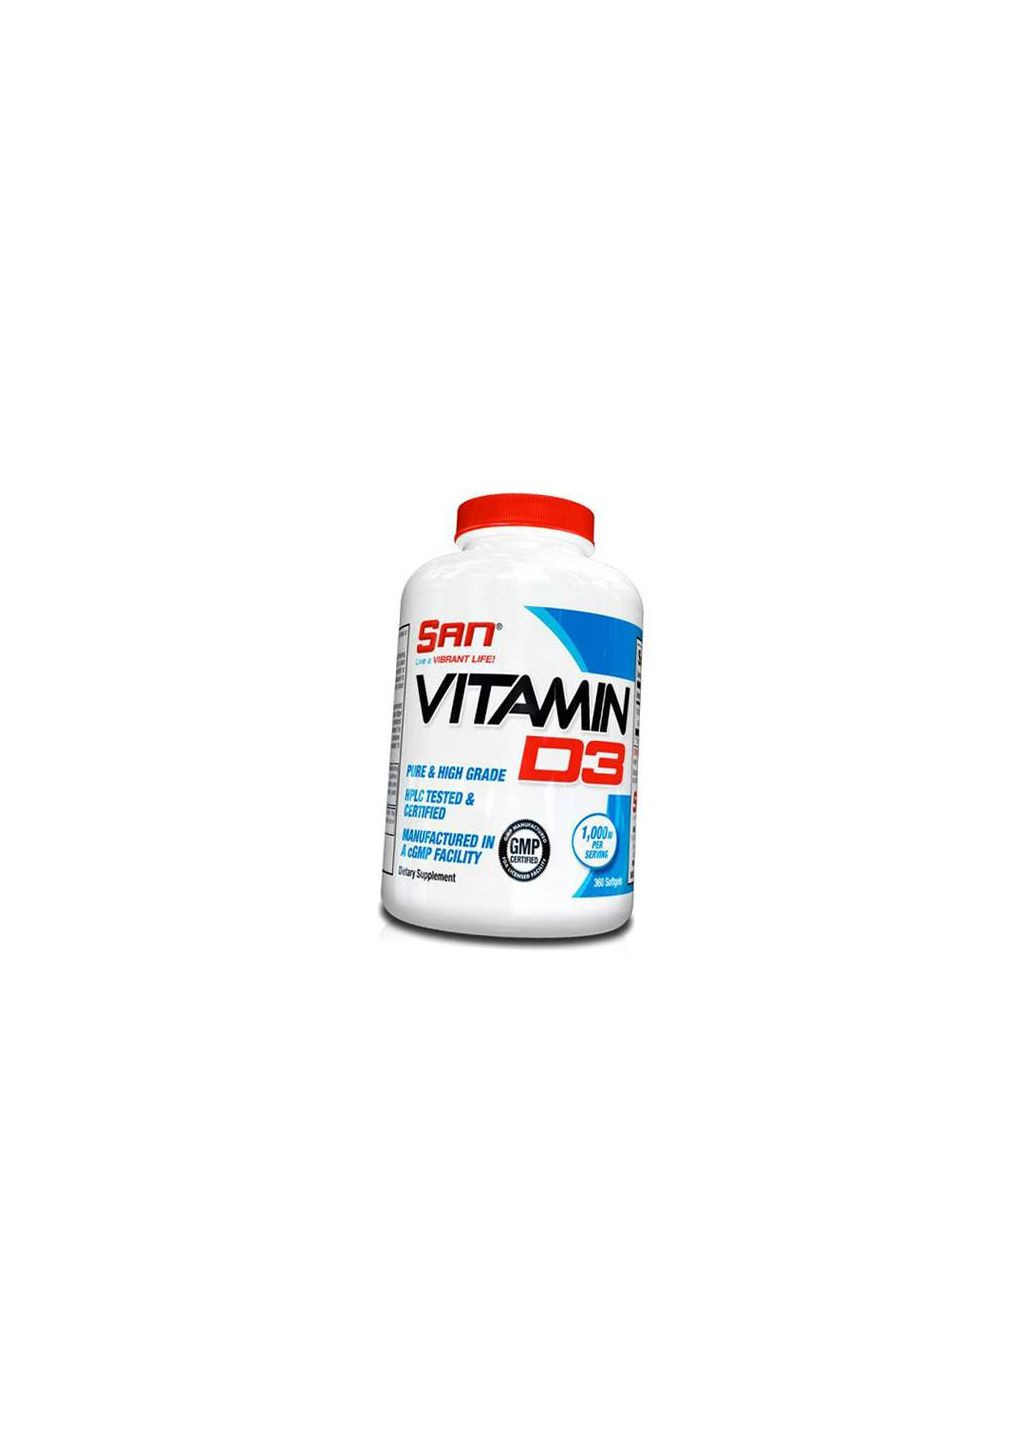 Витамин Д3, Vitamin D3 1000, 360гелкапс (36091008) San (293254019)